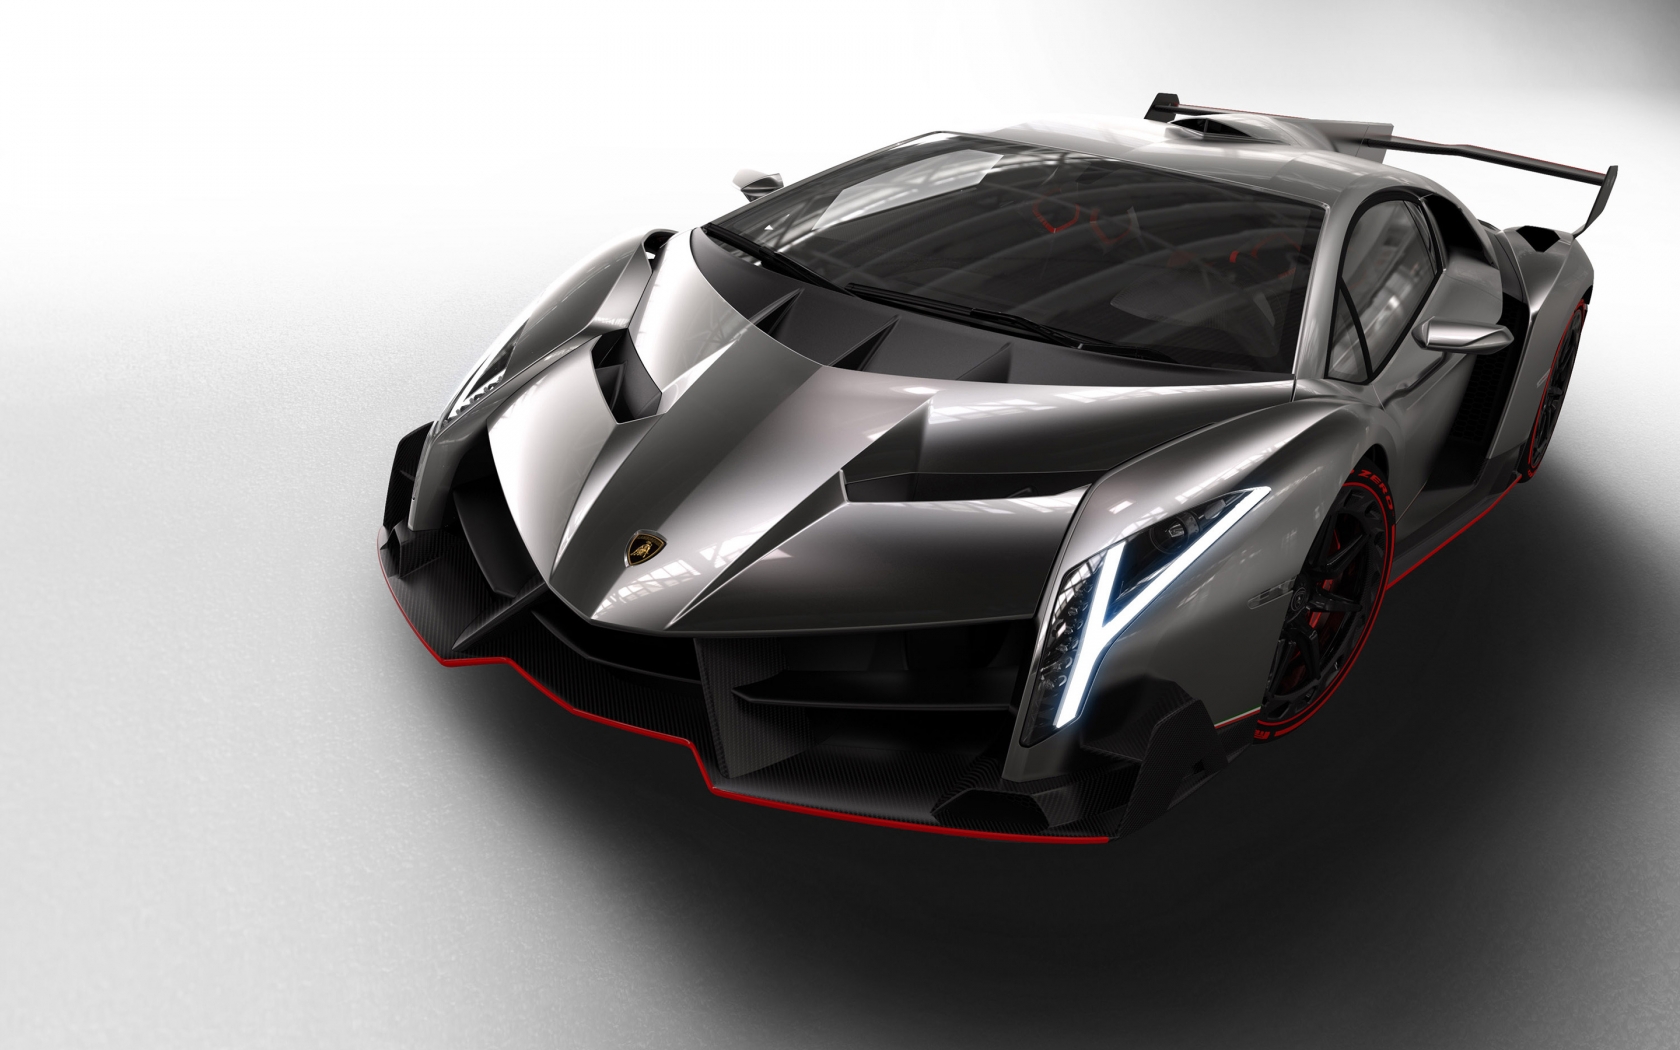 Lamborghini Veneno Studio for 1680 x 1050 widescreen resolution